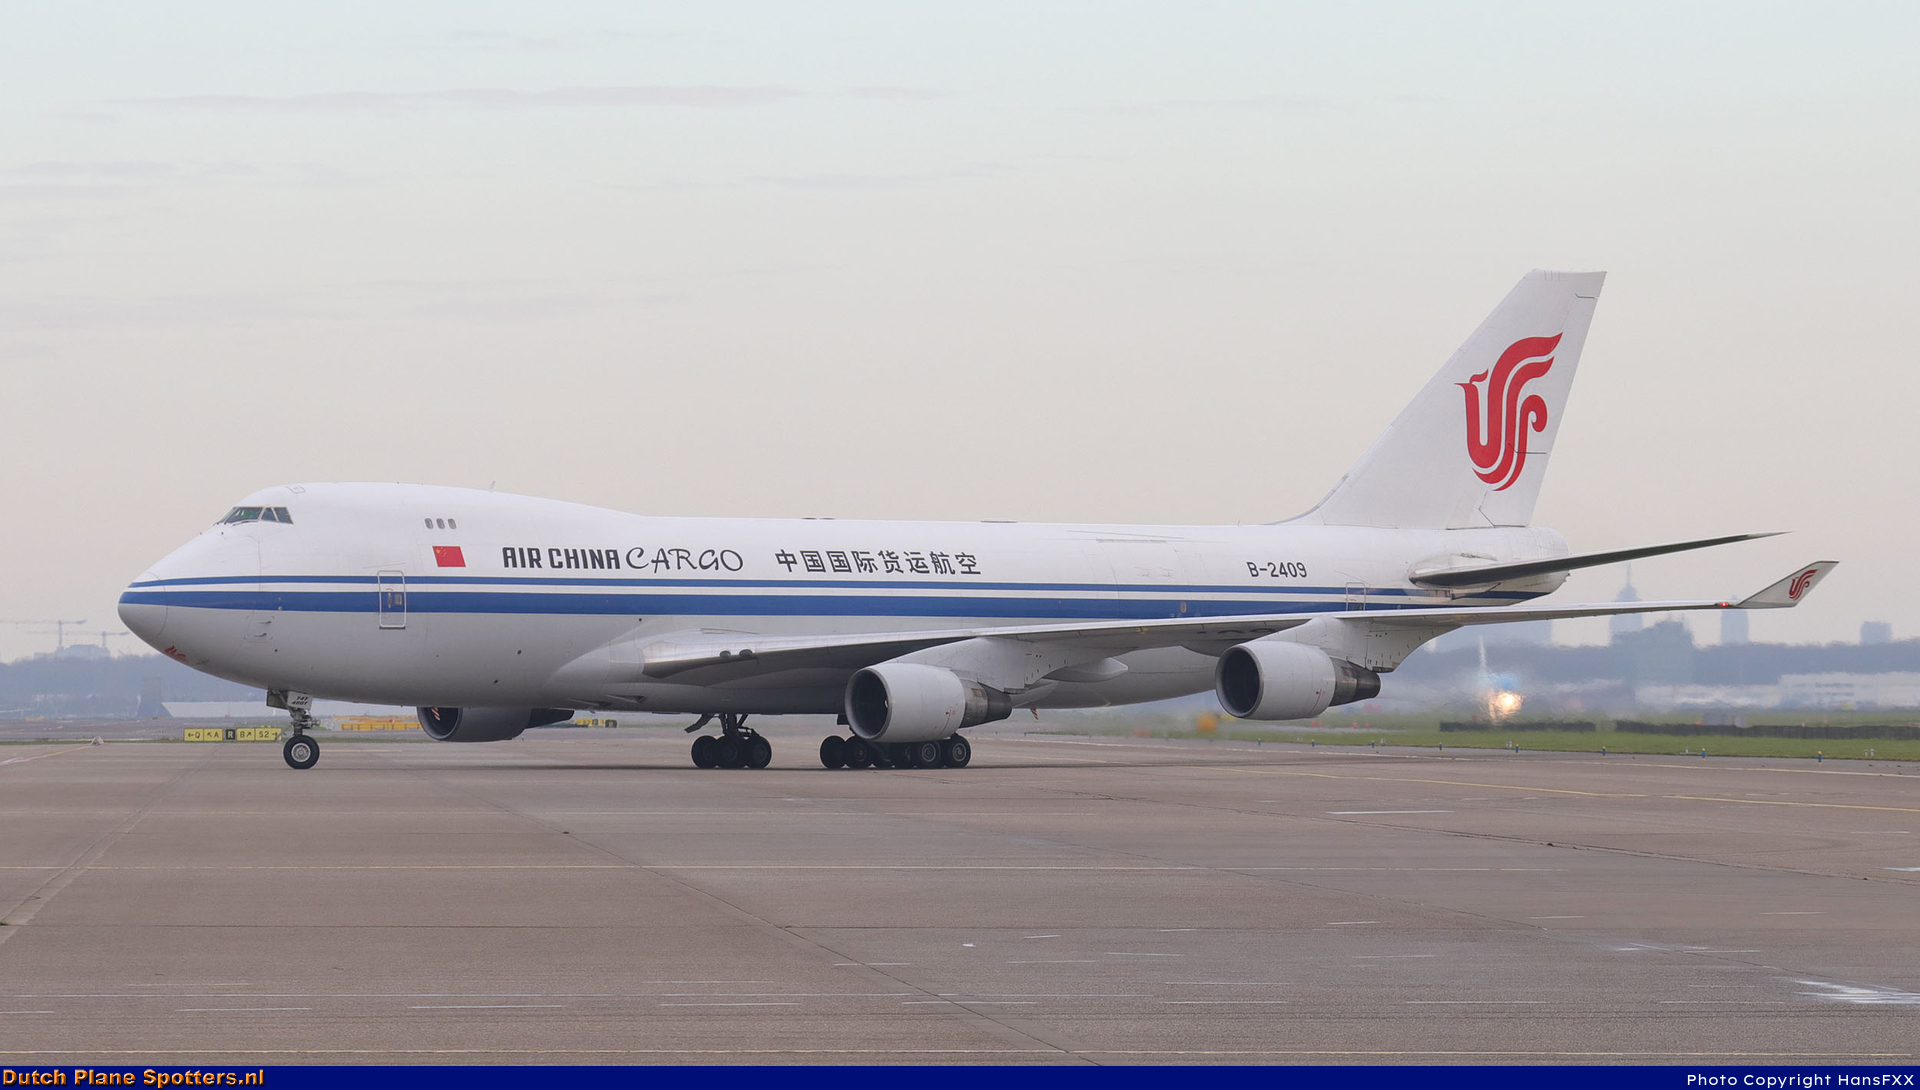 B-2409 Boeing 747-400 Air China Cargo by HansFXX